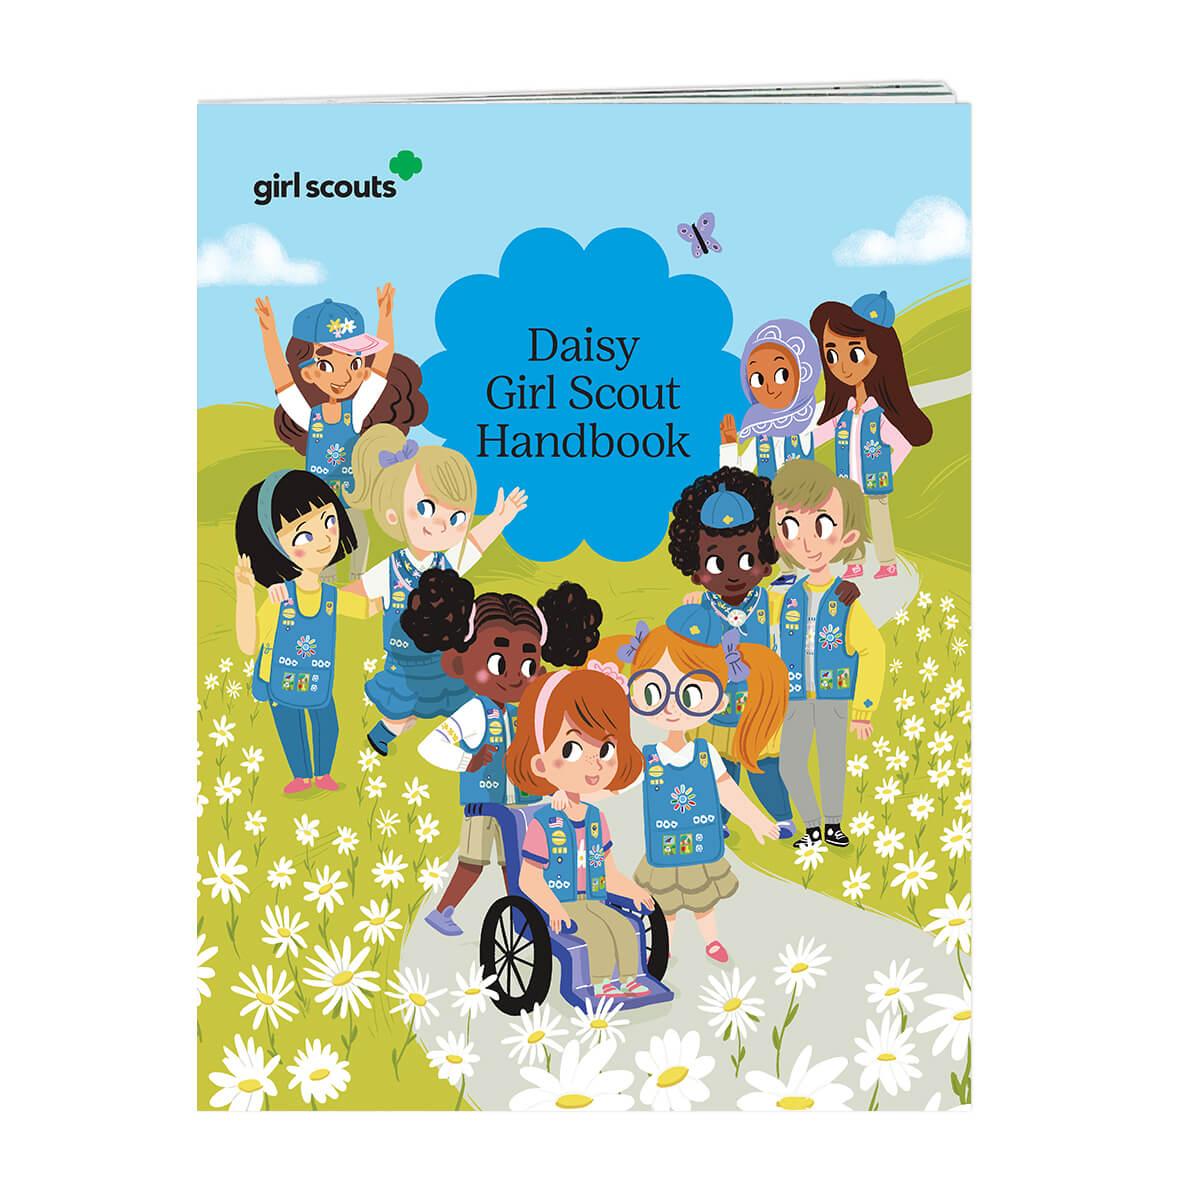 Daisy Girl Scout Handbook